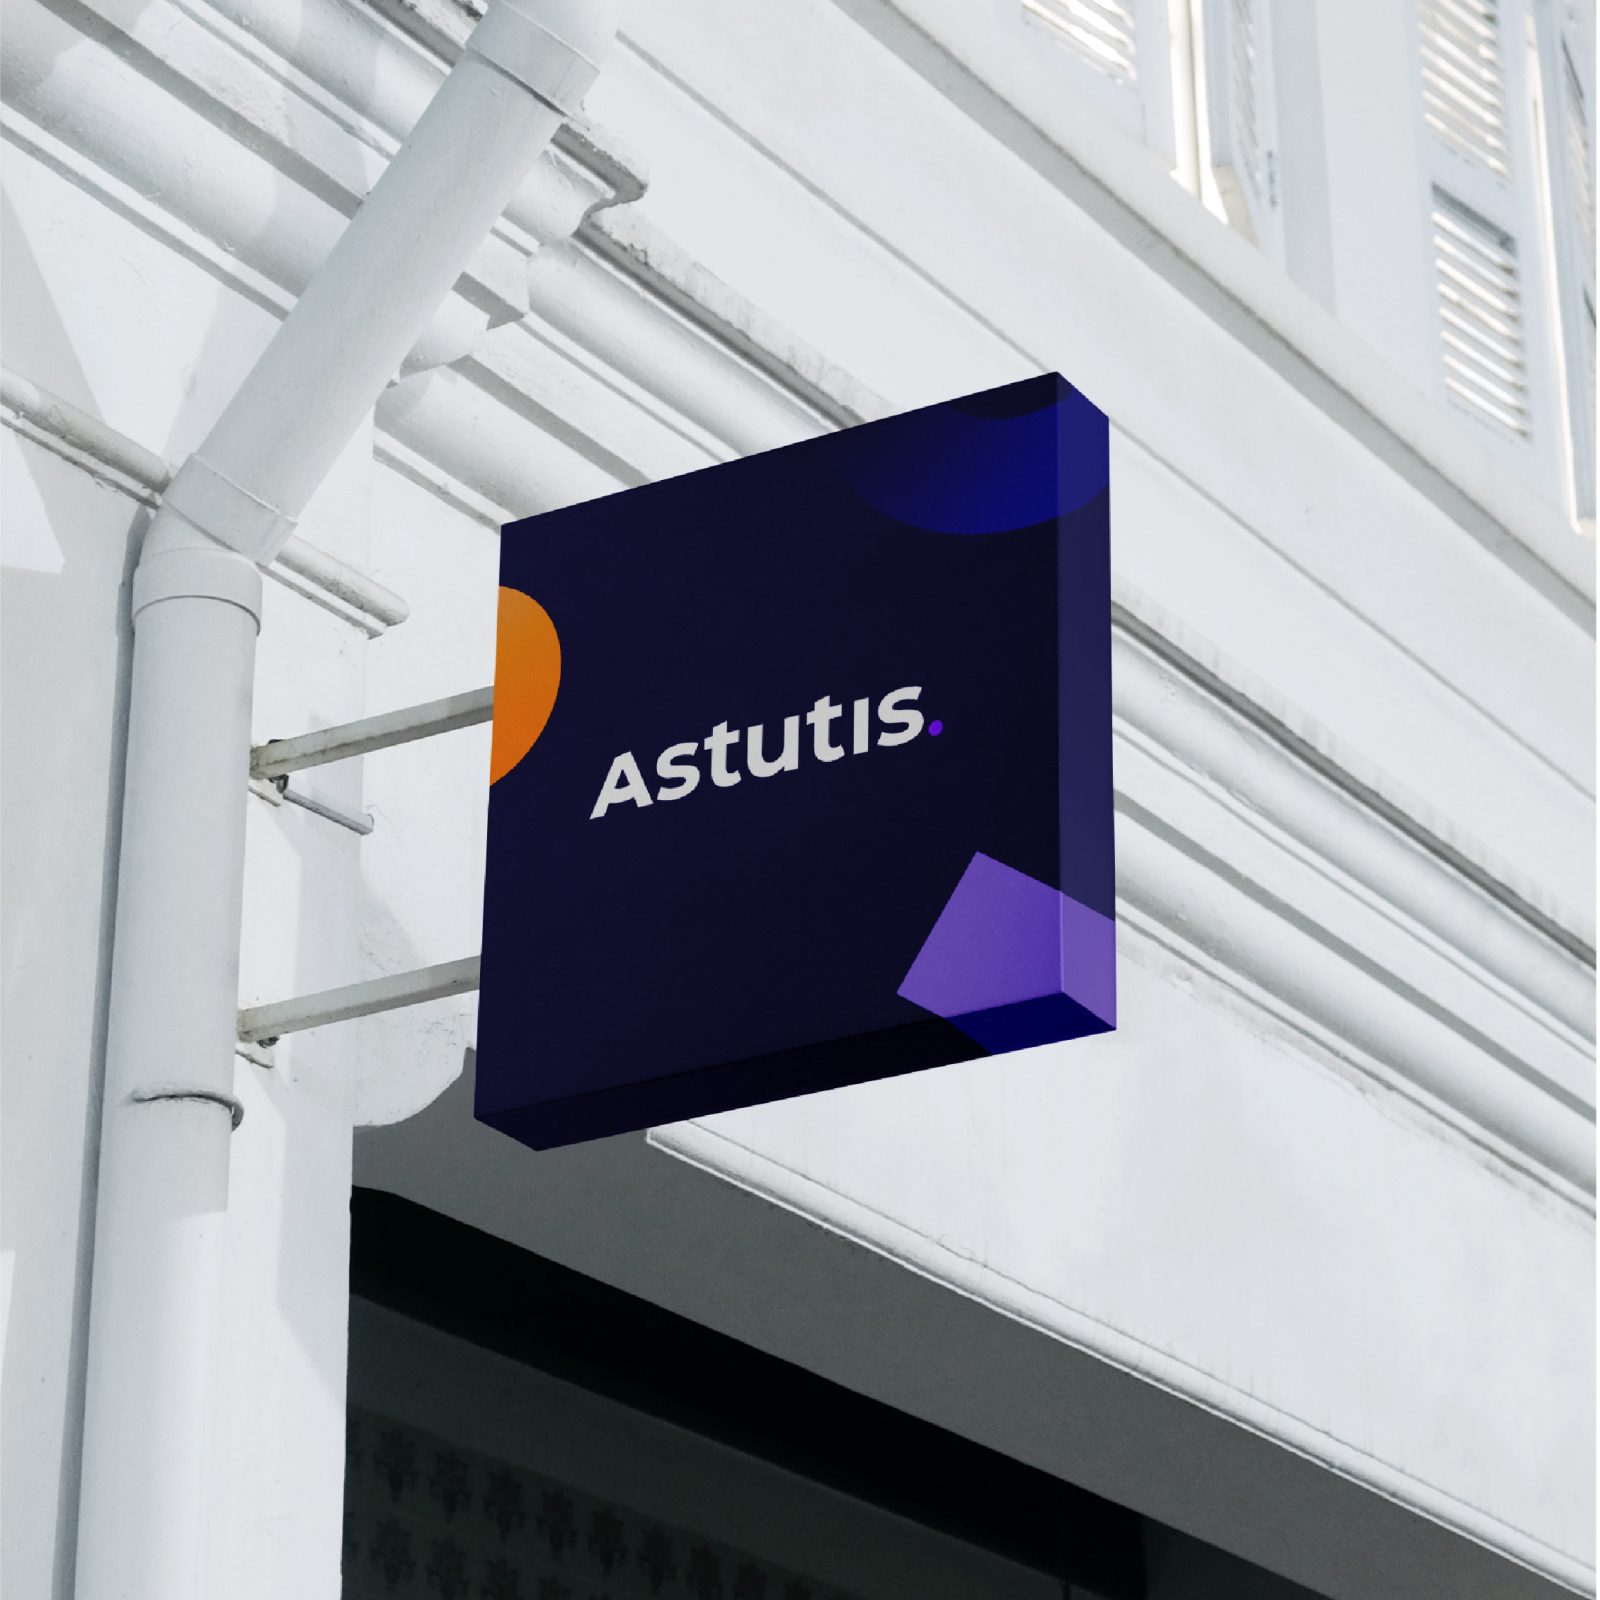 Astutis